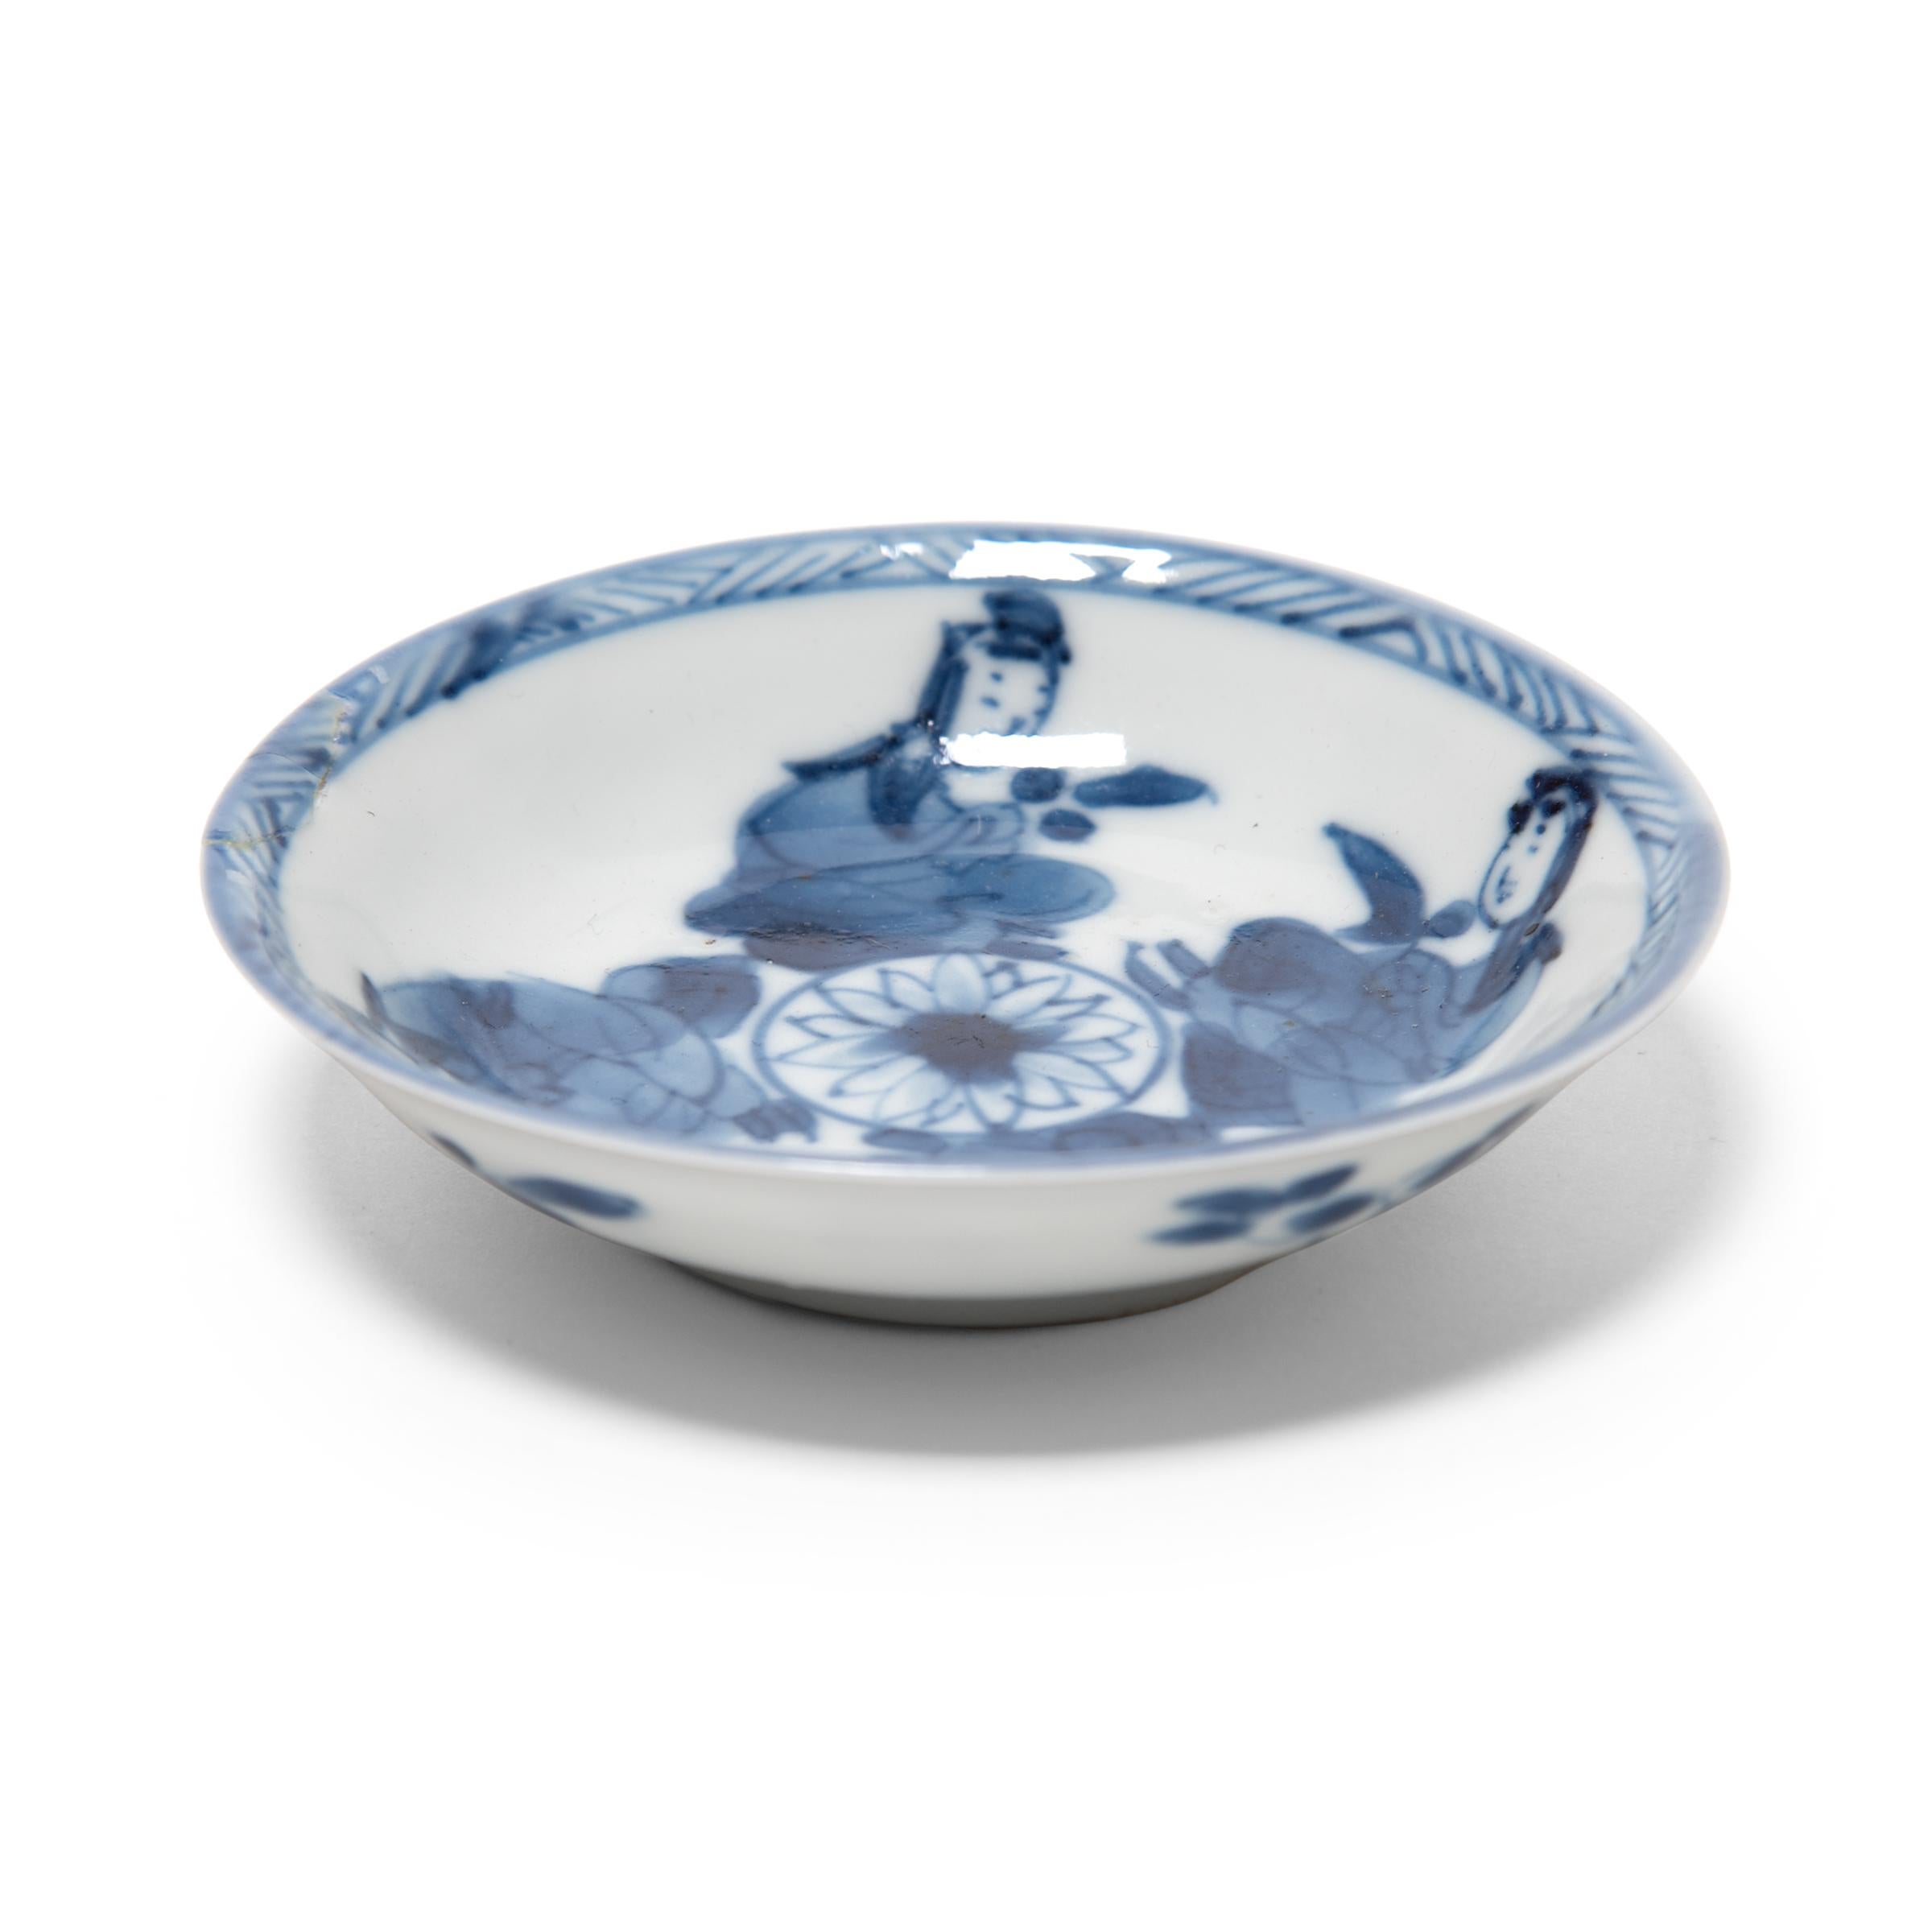 Diese Porzellanuntertasse aus dem 19. Jahrhundert ist ein schönes Beispiel für chinesische Blau-Weiß-Keramik. Die zierliche Schale ist fein gearbeitet mit dünnen Wänden und zarten Pinselstrichen, die vier um eine zentrale Lotusblüte sitzende Diener